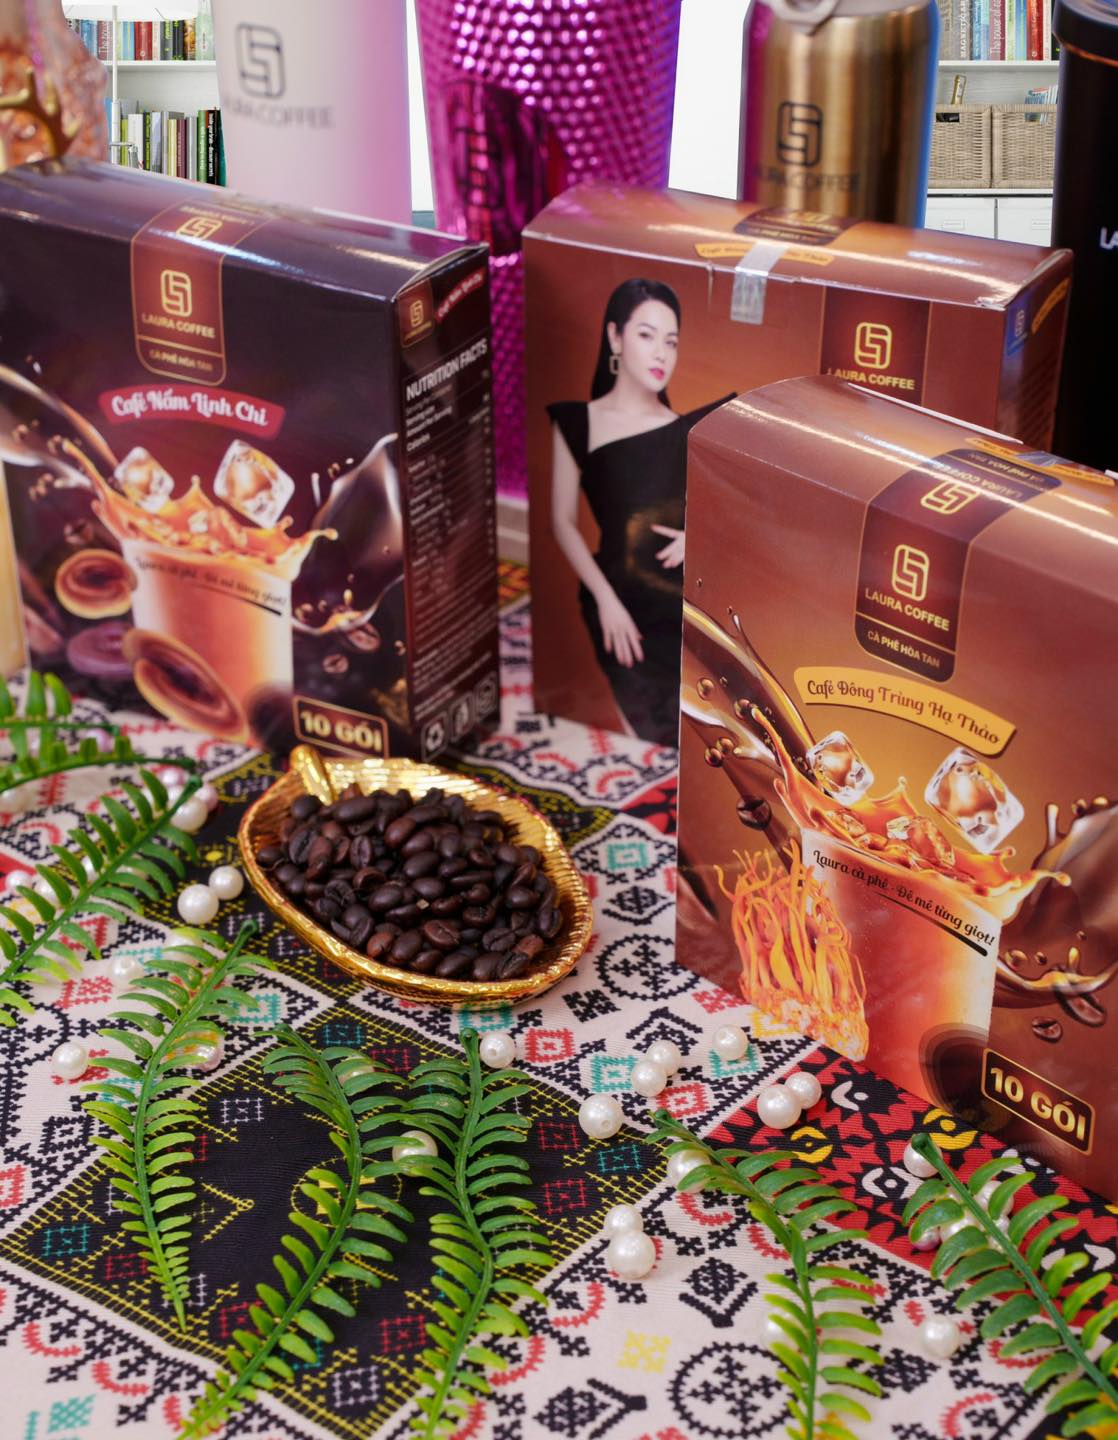 Cà phê hòa tan cao cấp Laura Coffee Đông Trùng Hạ Thảo Nhật Kim Anh hộp 10 gói